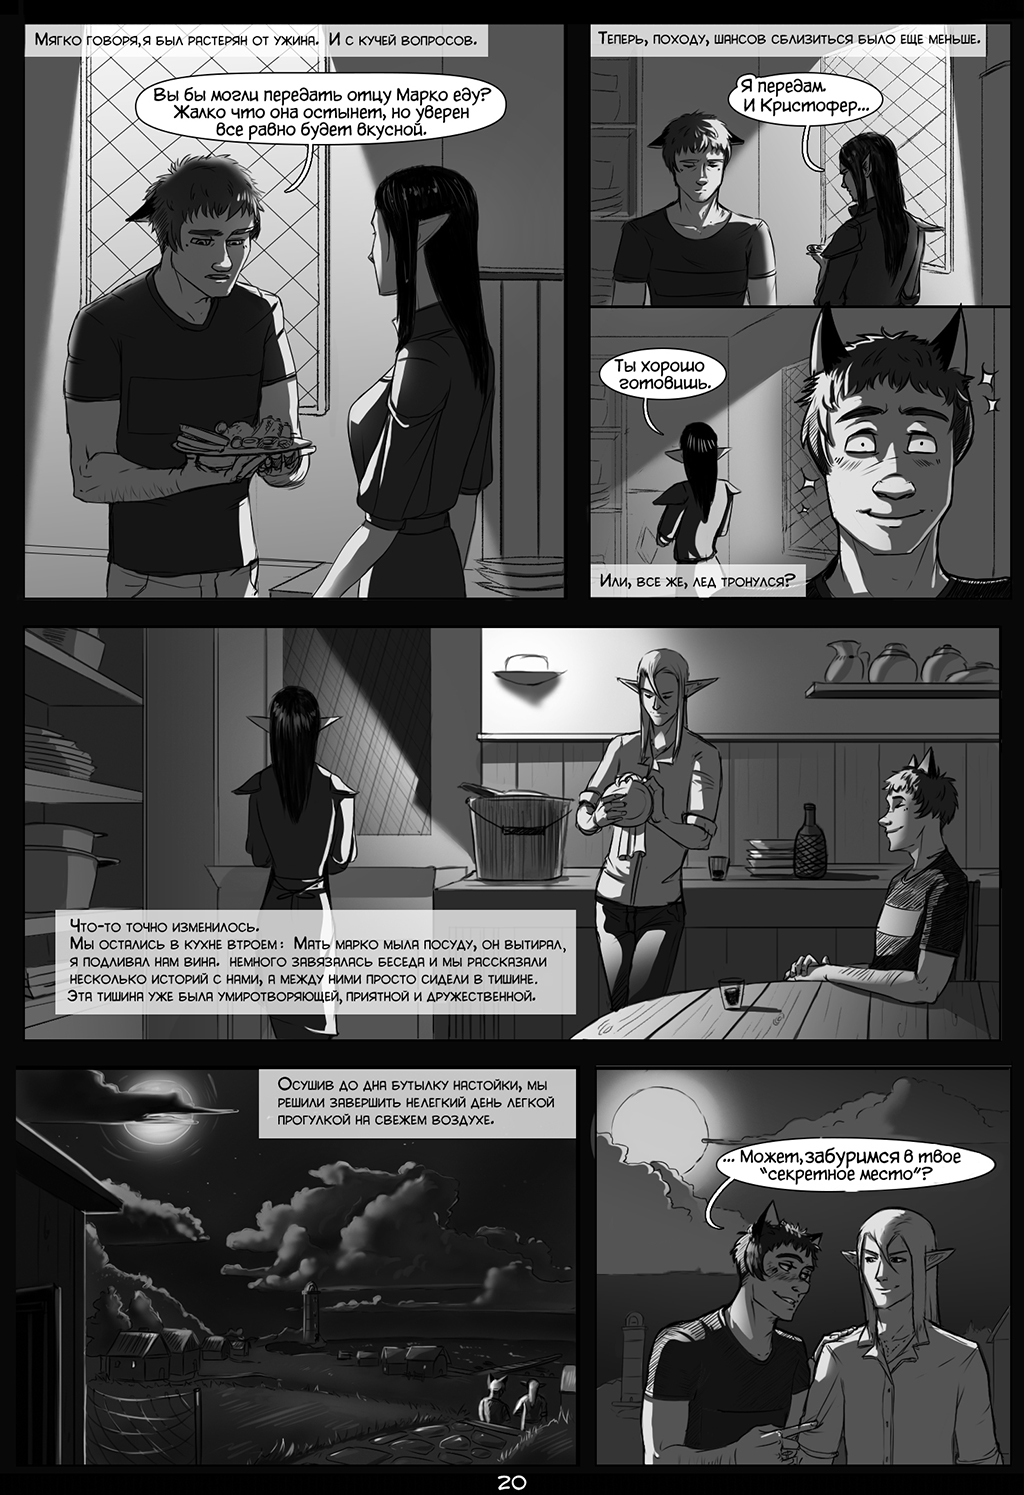 Комикс "Кристофер и Марко" - Чужая стая: выпуск №22